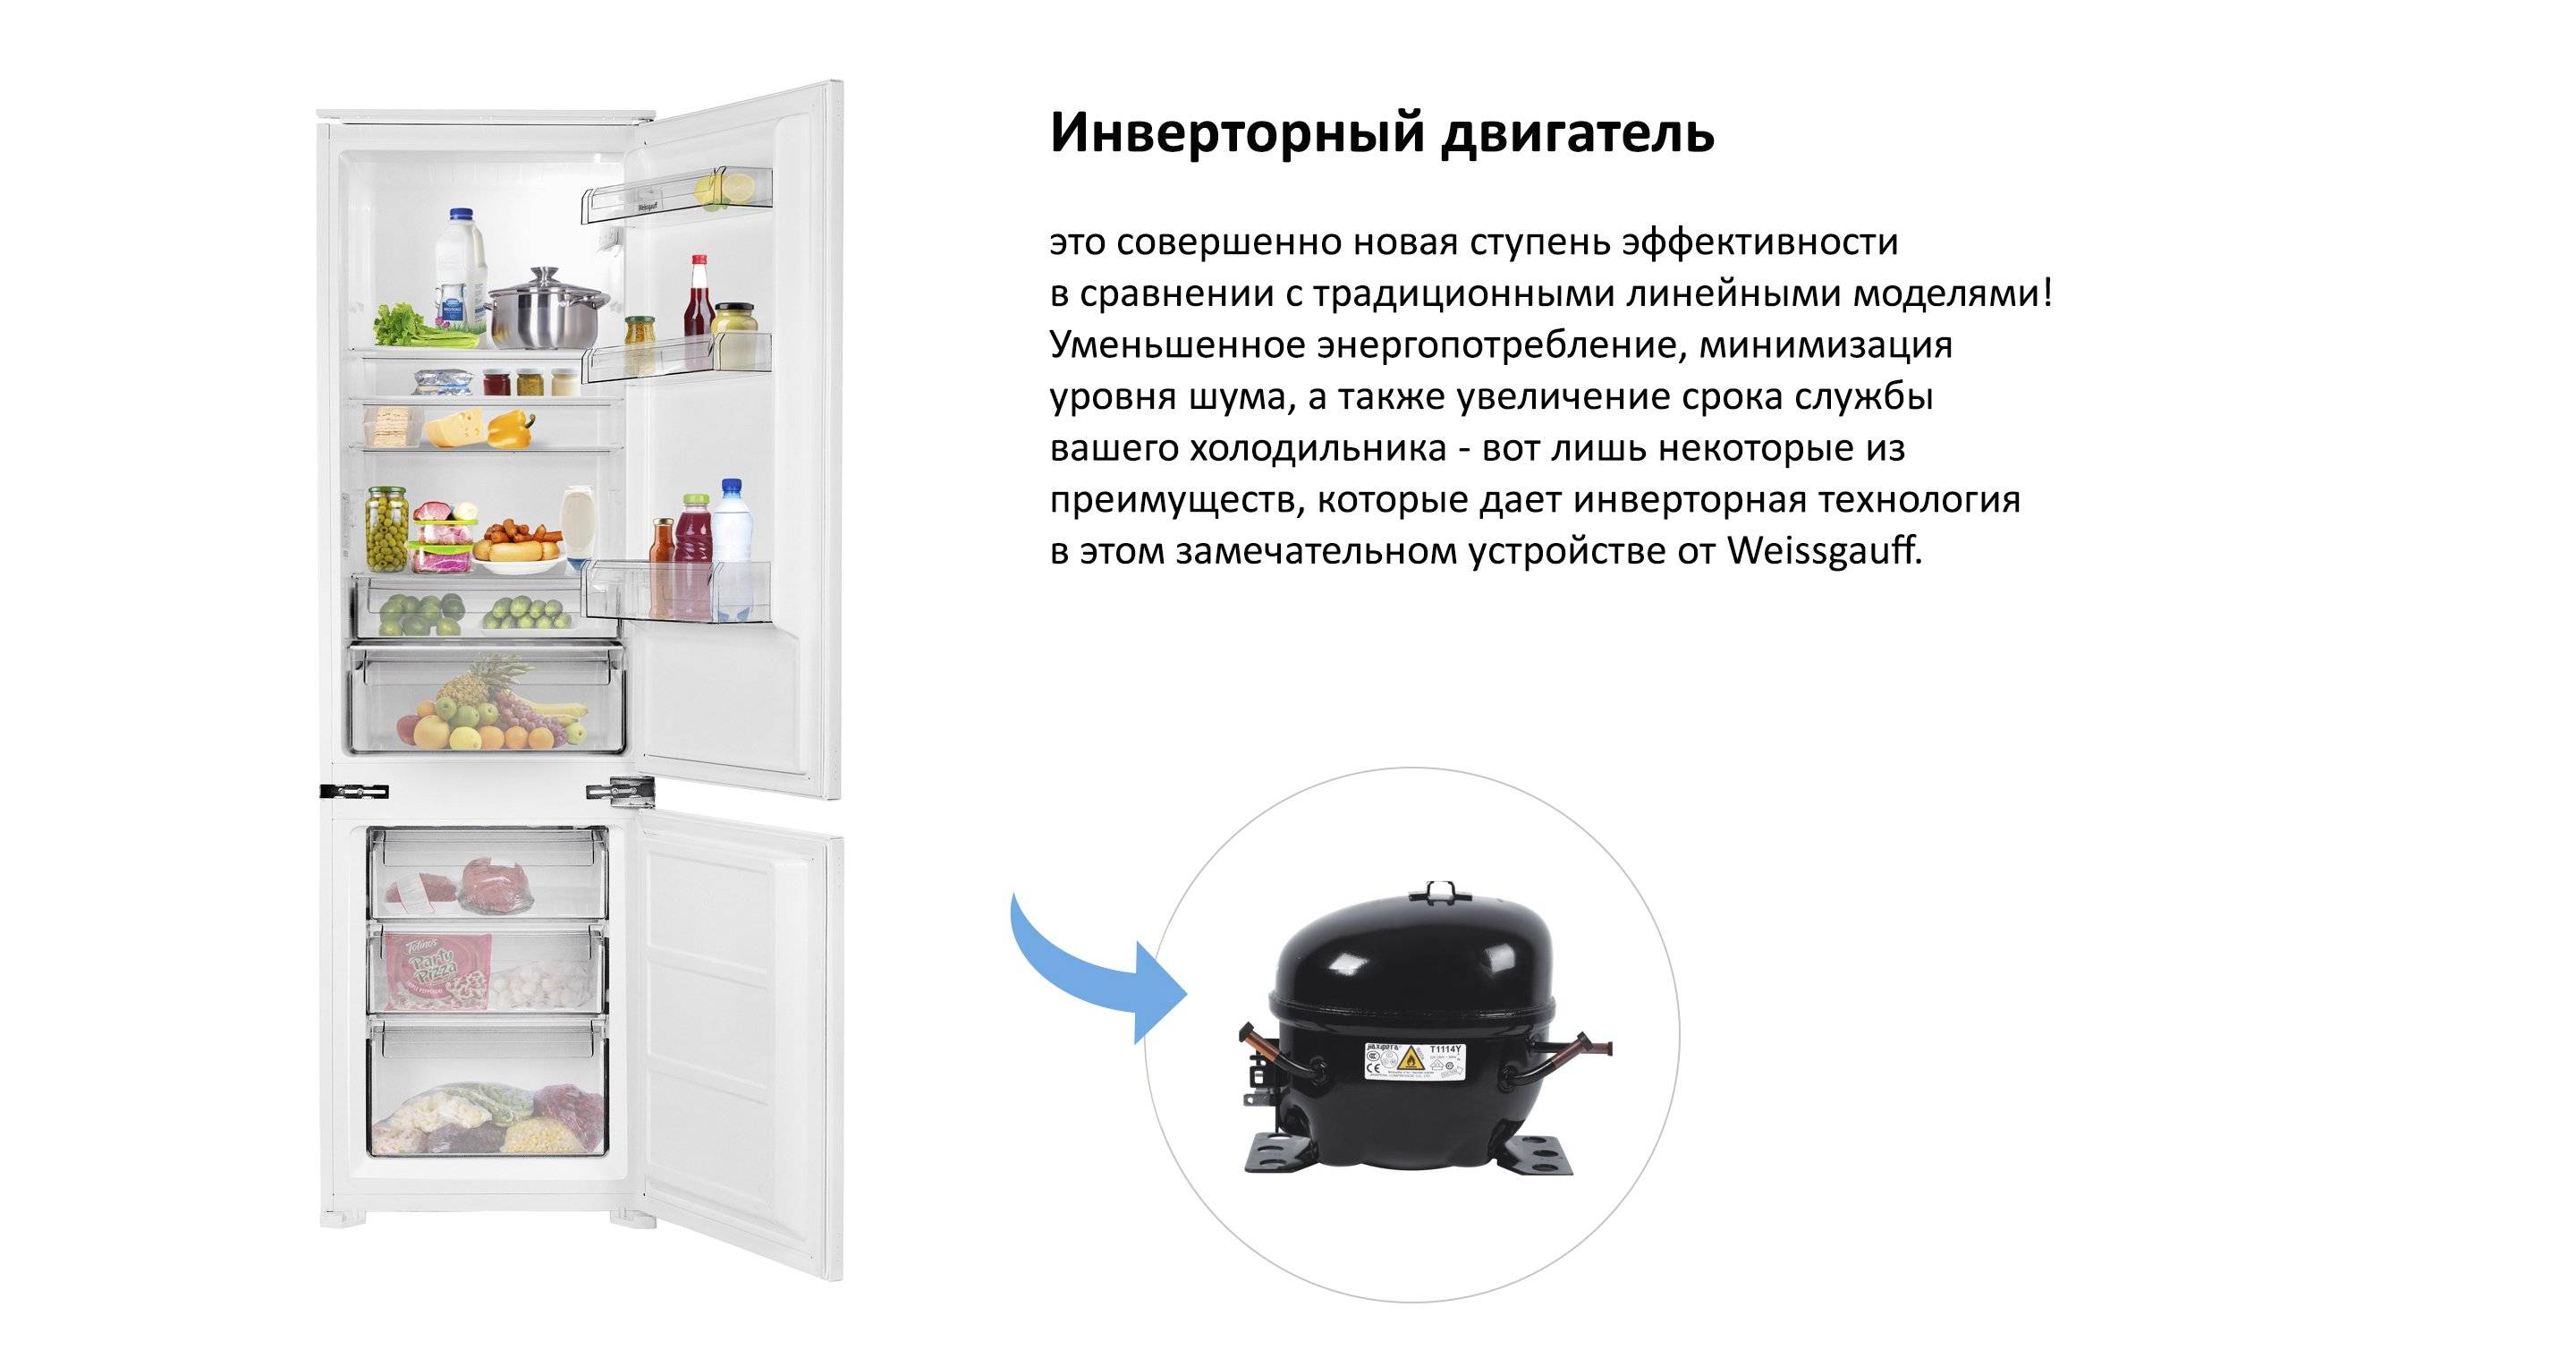 Инверторный холодильник - принцип, преимущества, обзор моделей